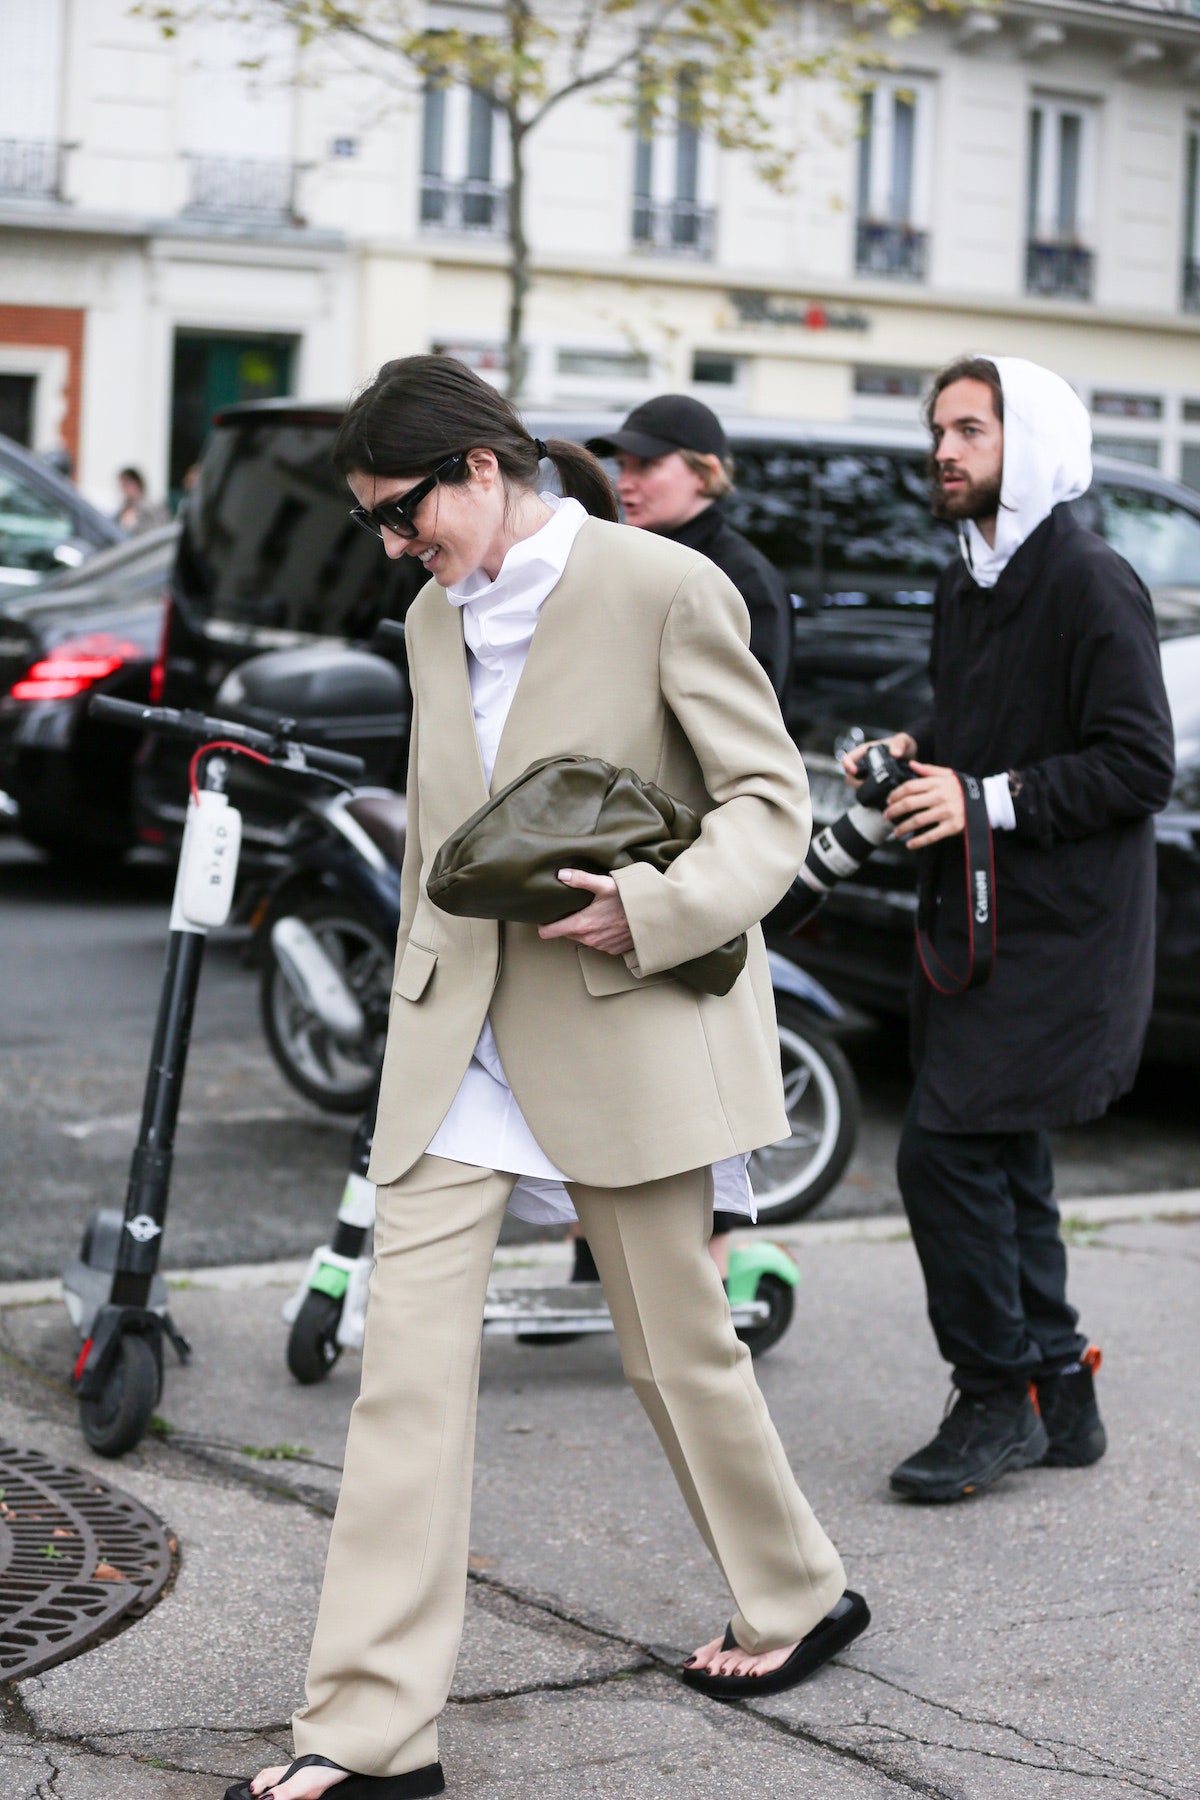 Неделя моды в Париже самые эффектные образы стритстайлгероинь с заключительных показов